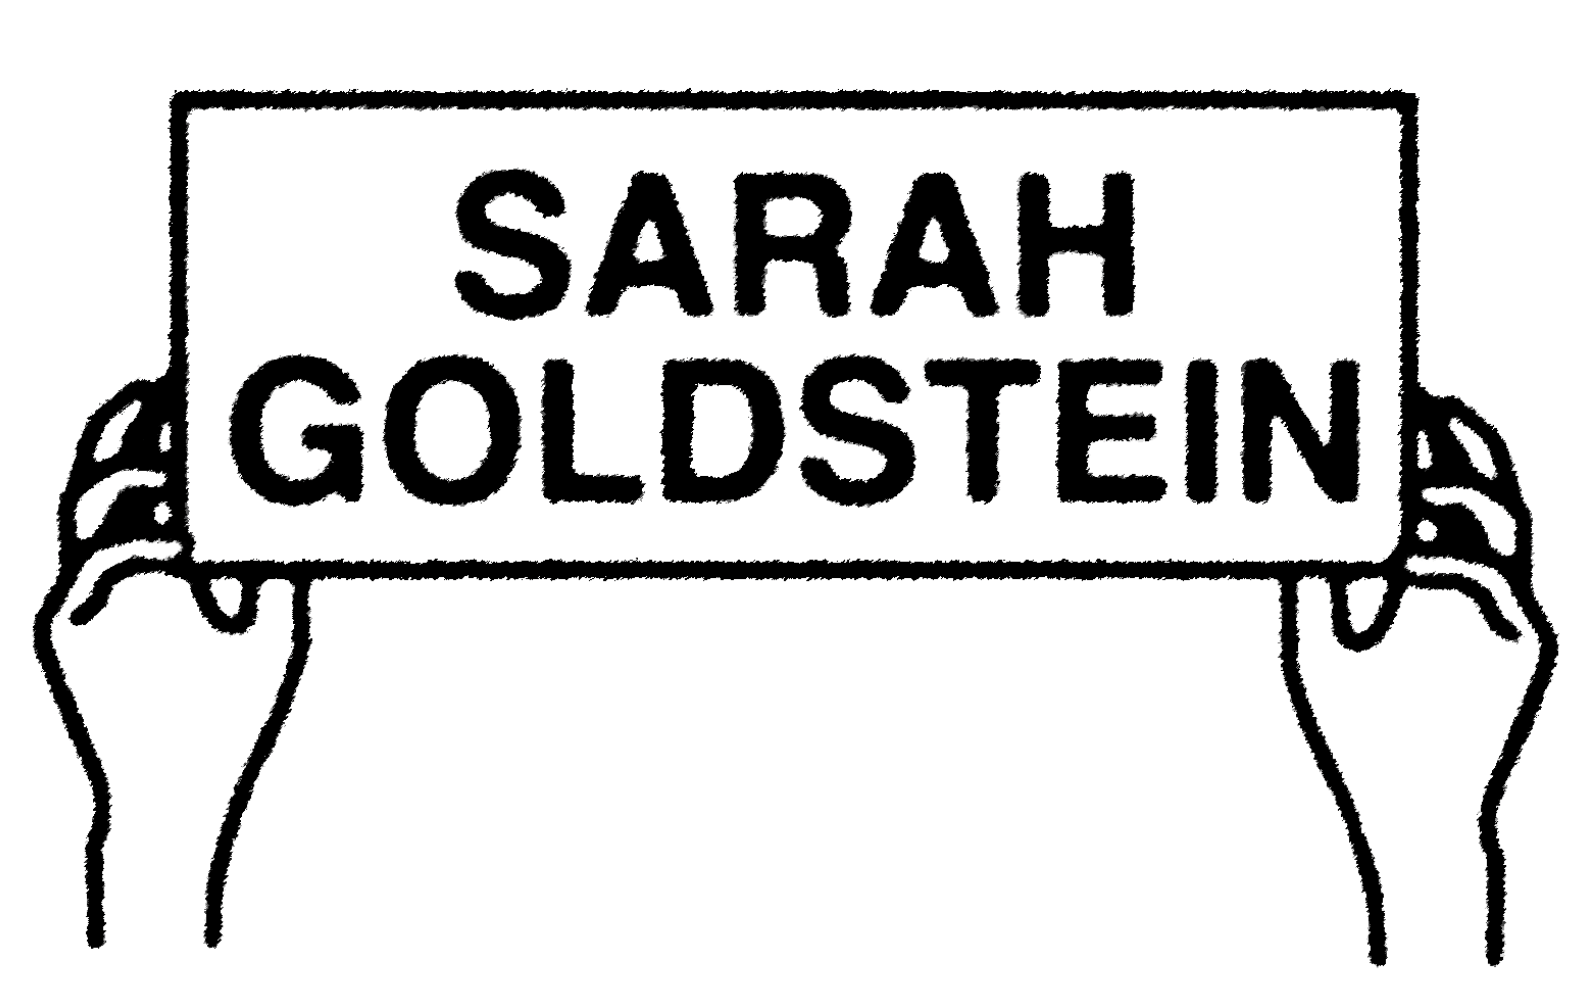 Sarah Goldstein